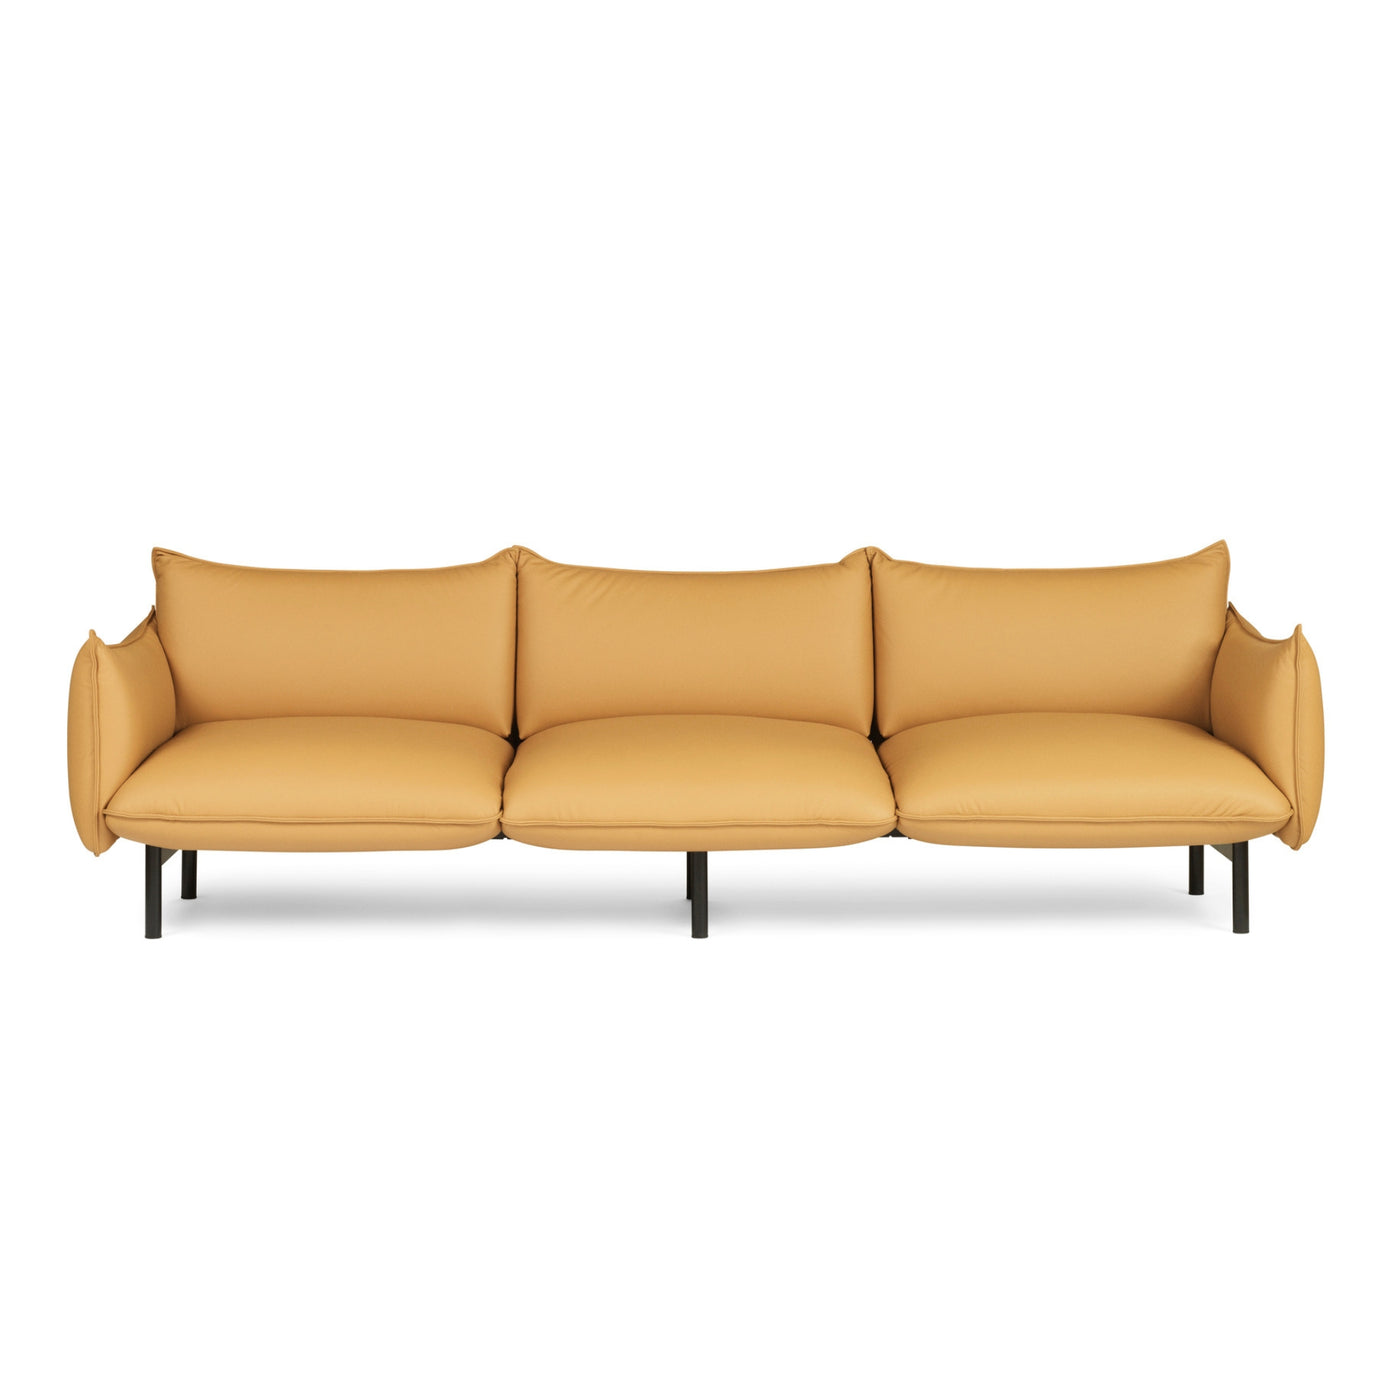 Normann Copenhagen Ark 3 Seater Modular Sofa at someday designs. #colour_ultra-camel-41571